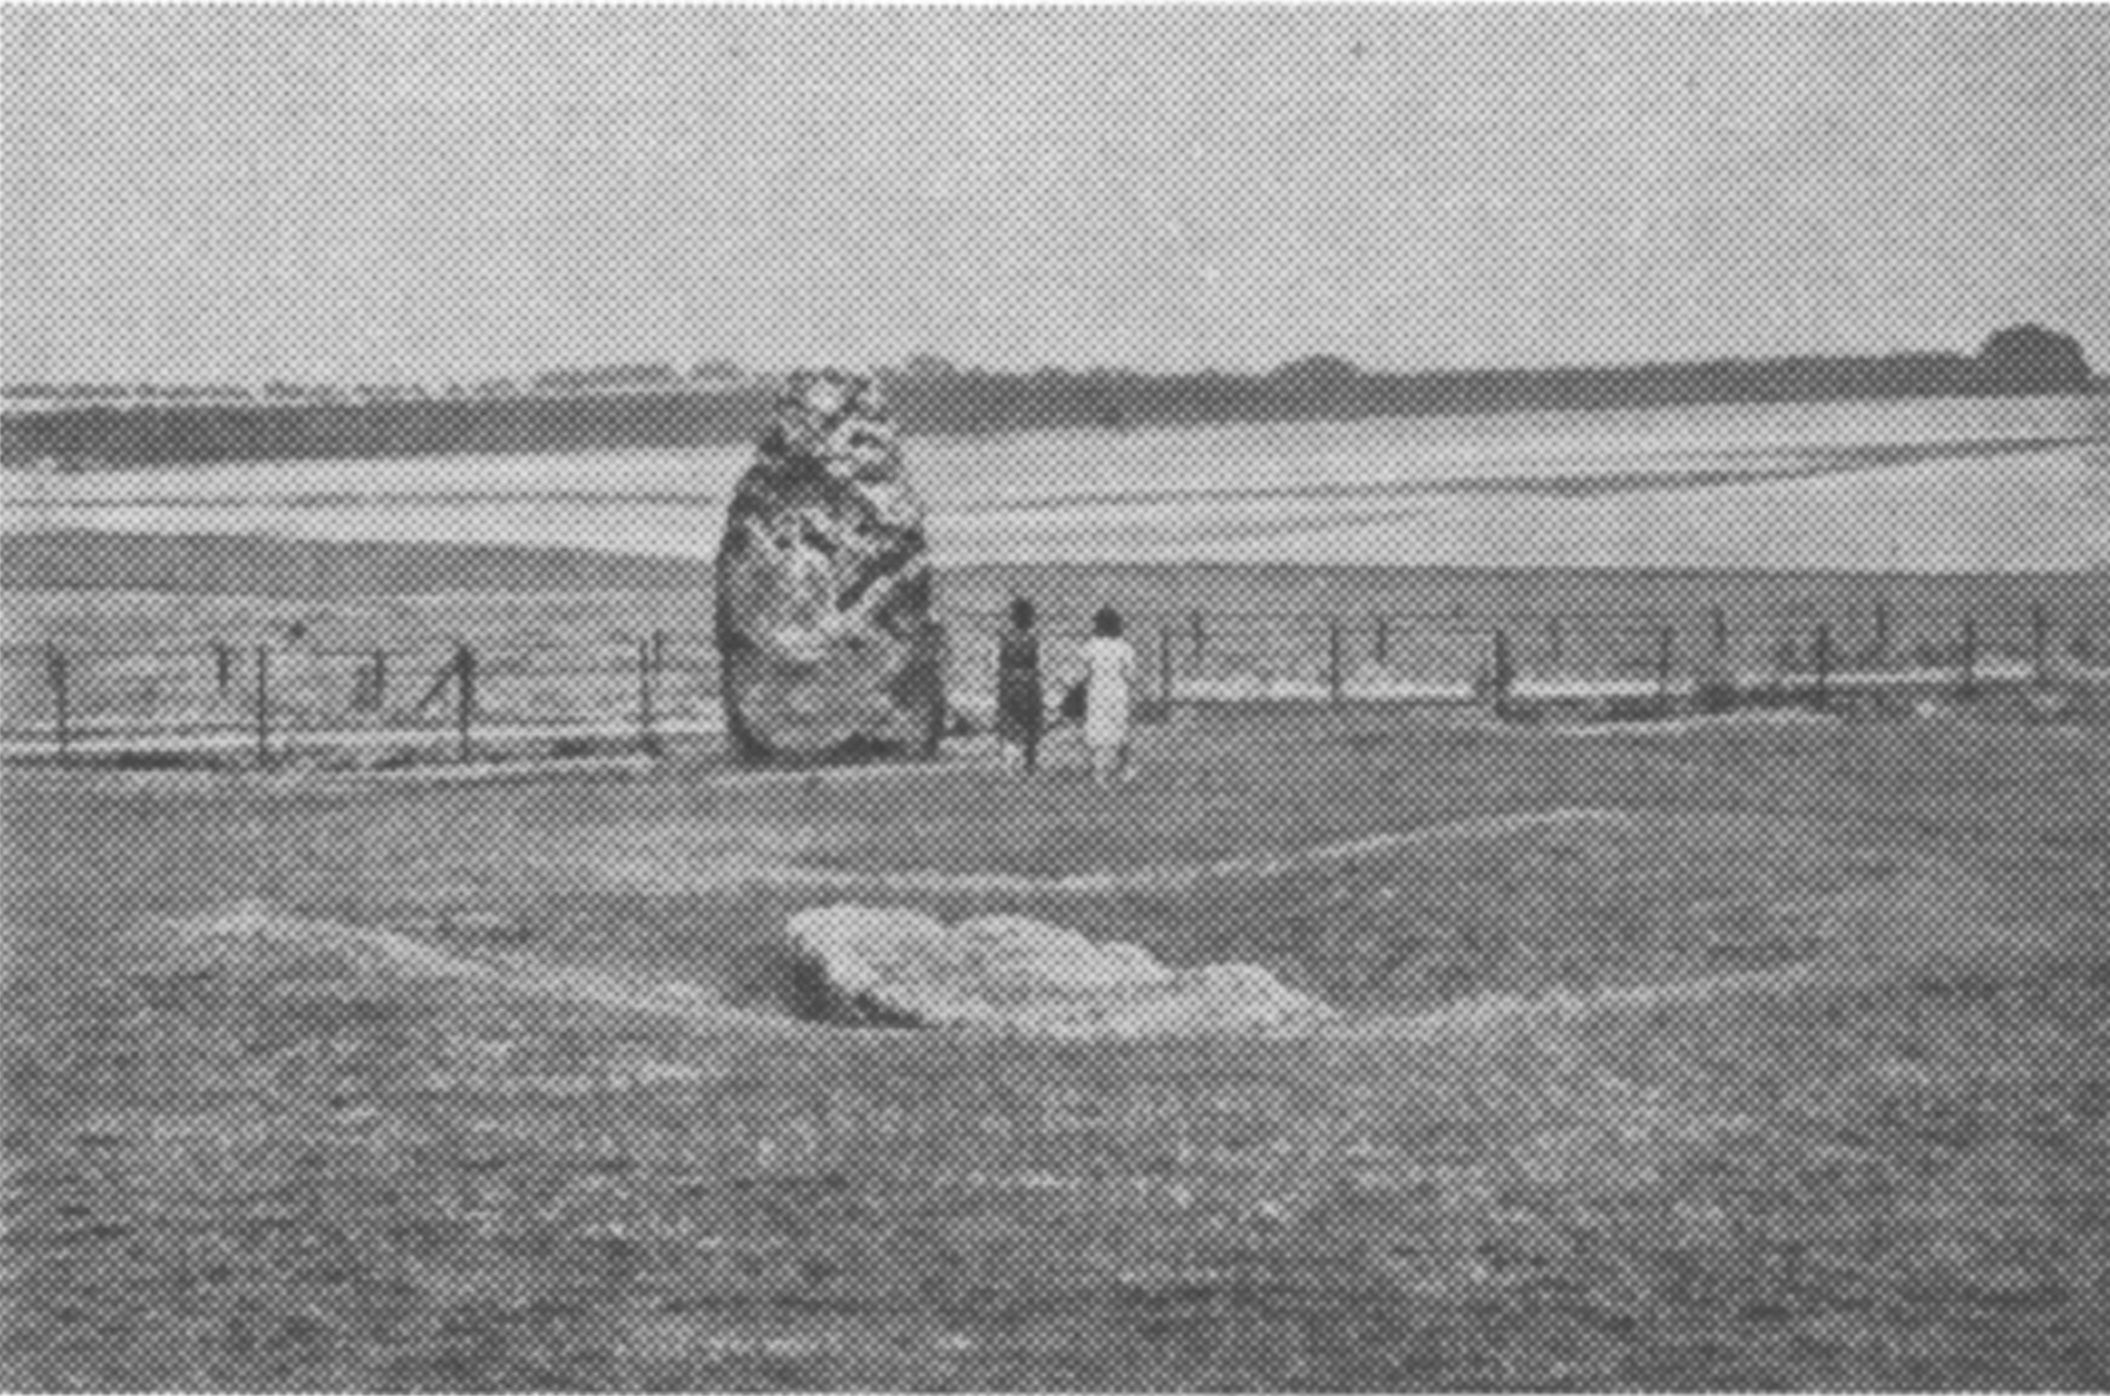 Фото 9. Вид «Эшафота» и Пяточного камня со стороны арки № 30—1, июль 1964 г. Фотоаппарат был установлен на высоте 168 сантиметров. Обратите внимание, что вершина Пяточного камня видна точно на уровне горизонта